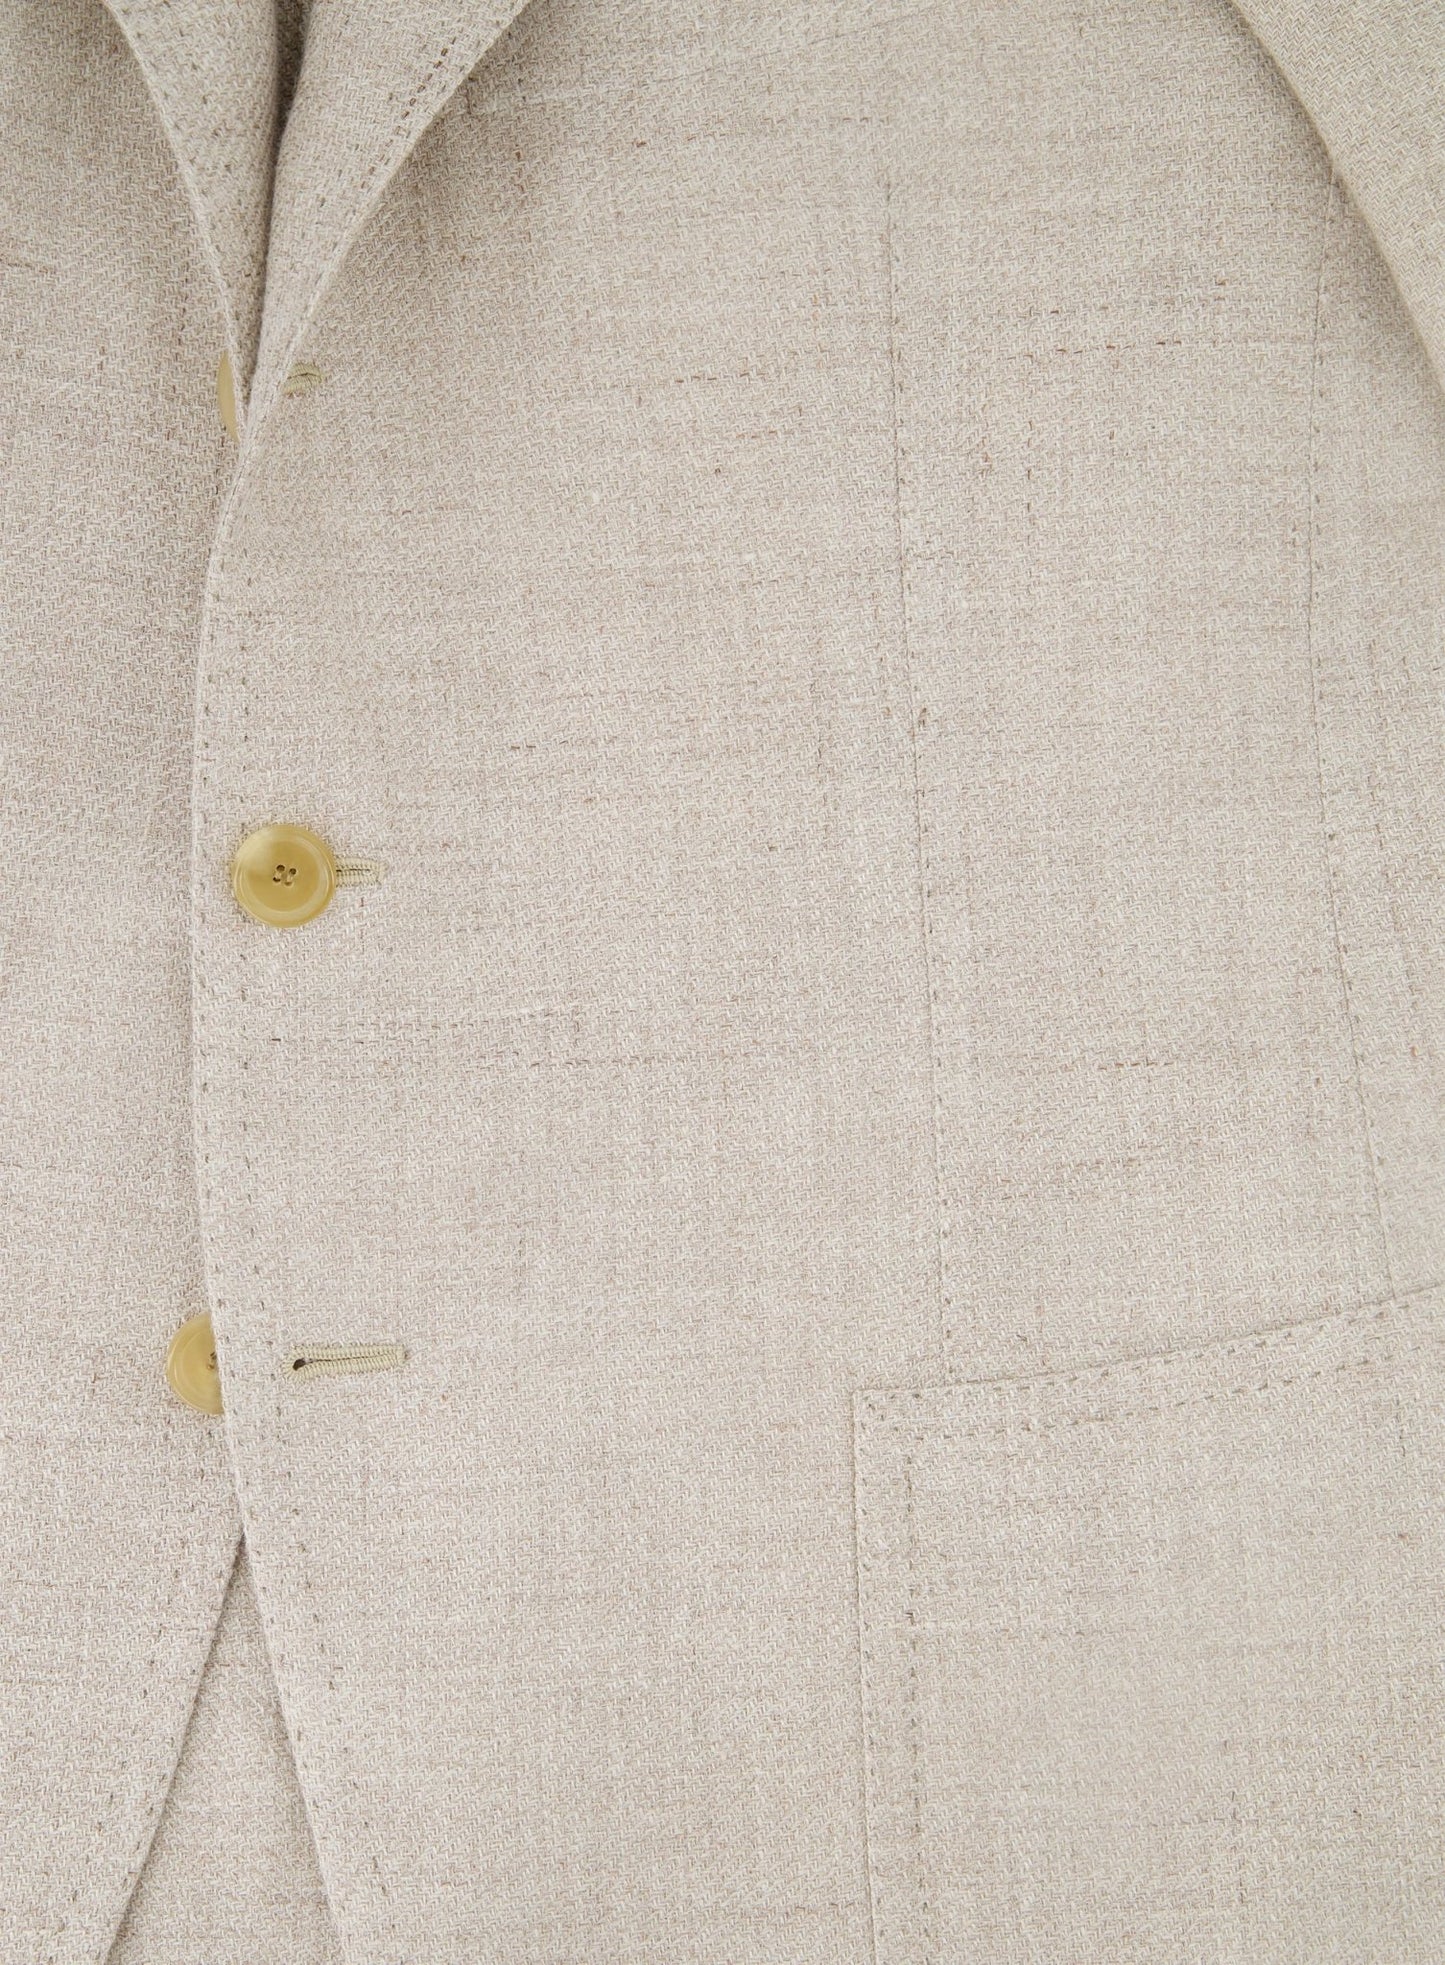 Handgemaakt jasje van linnen, zijde en katoen | Beige